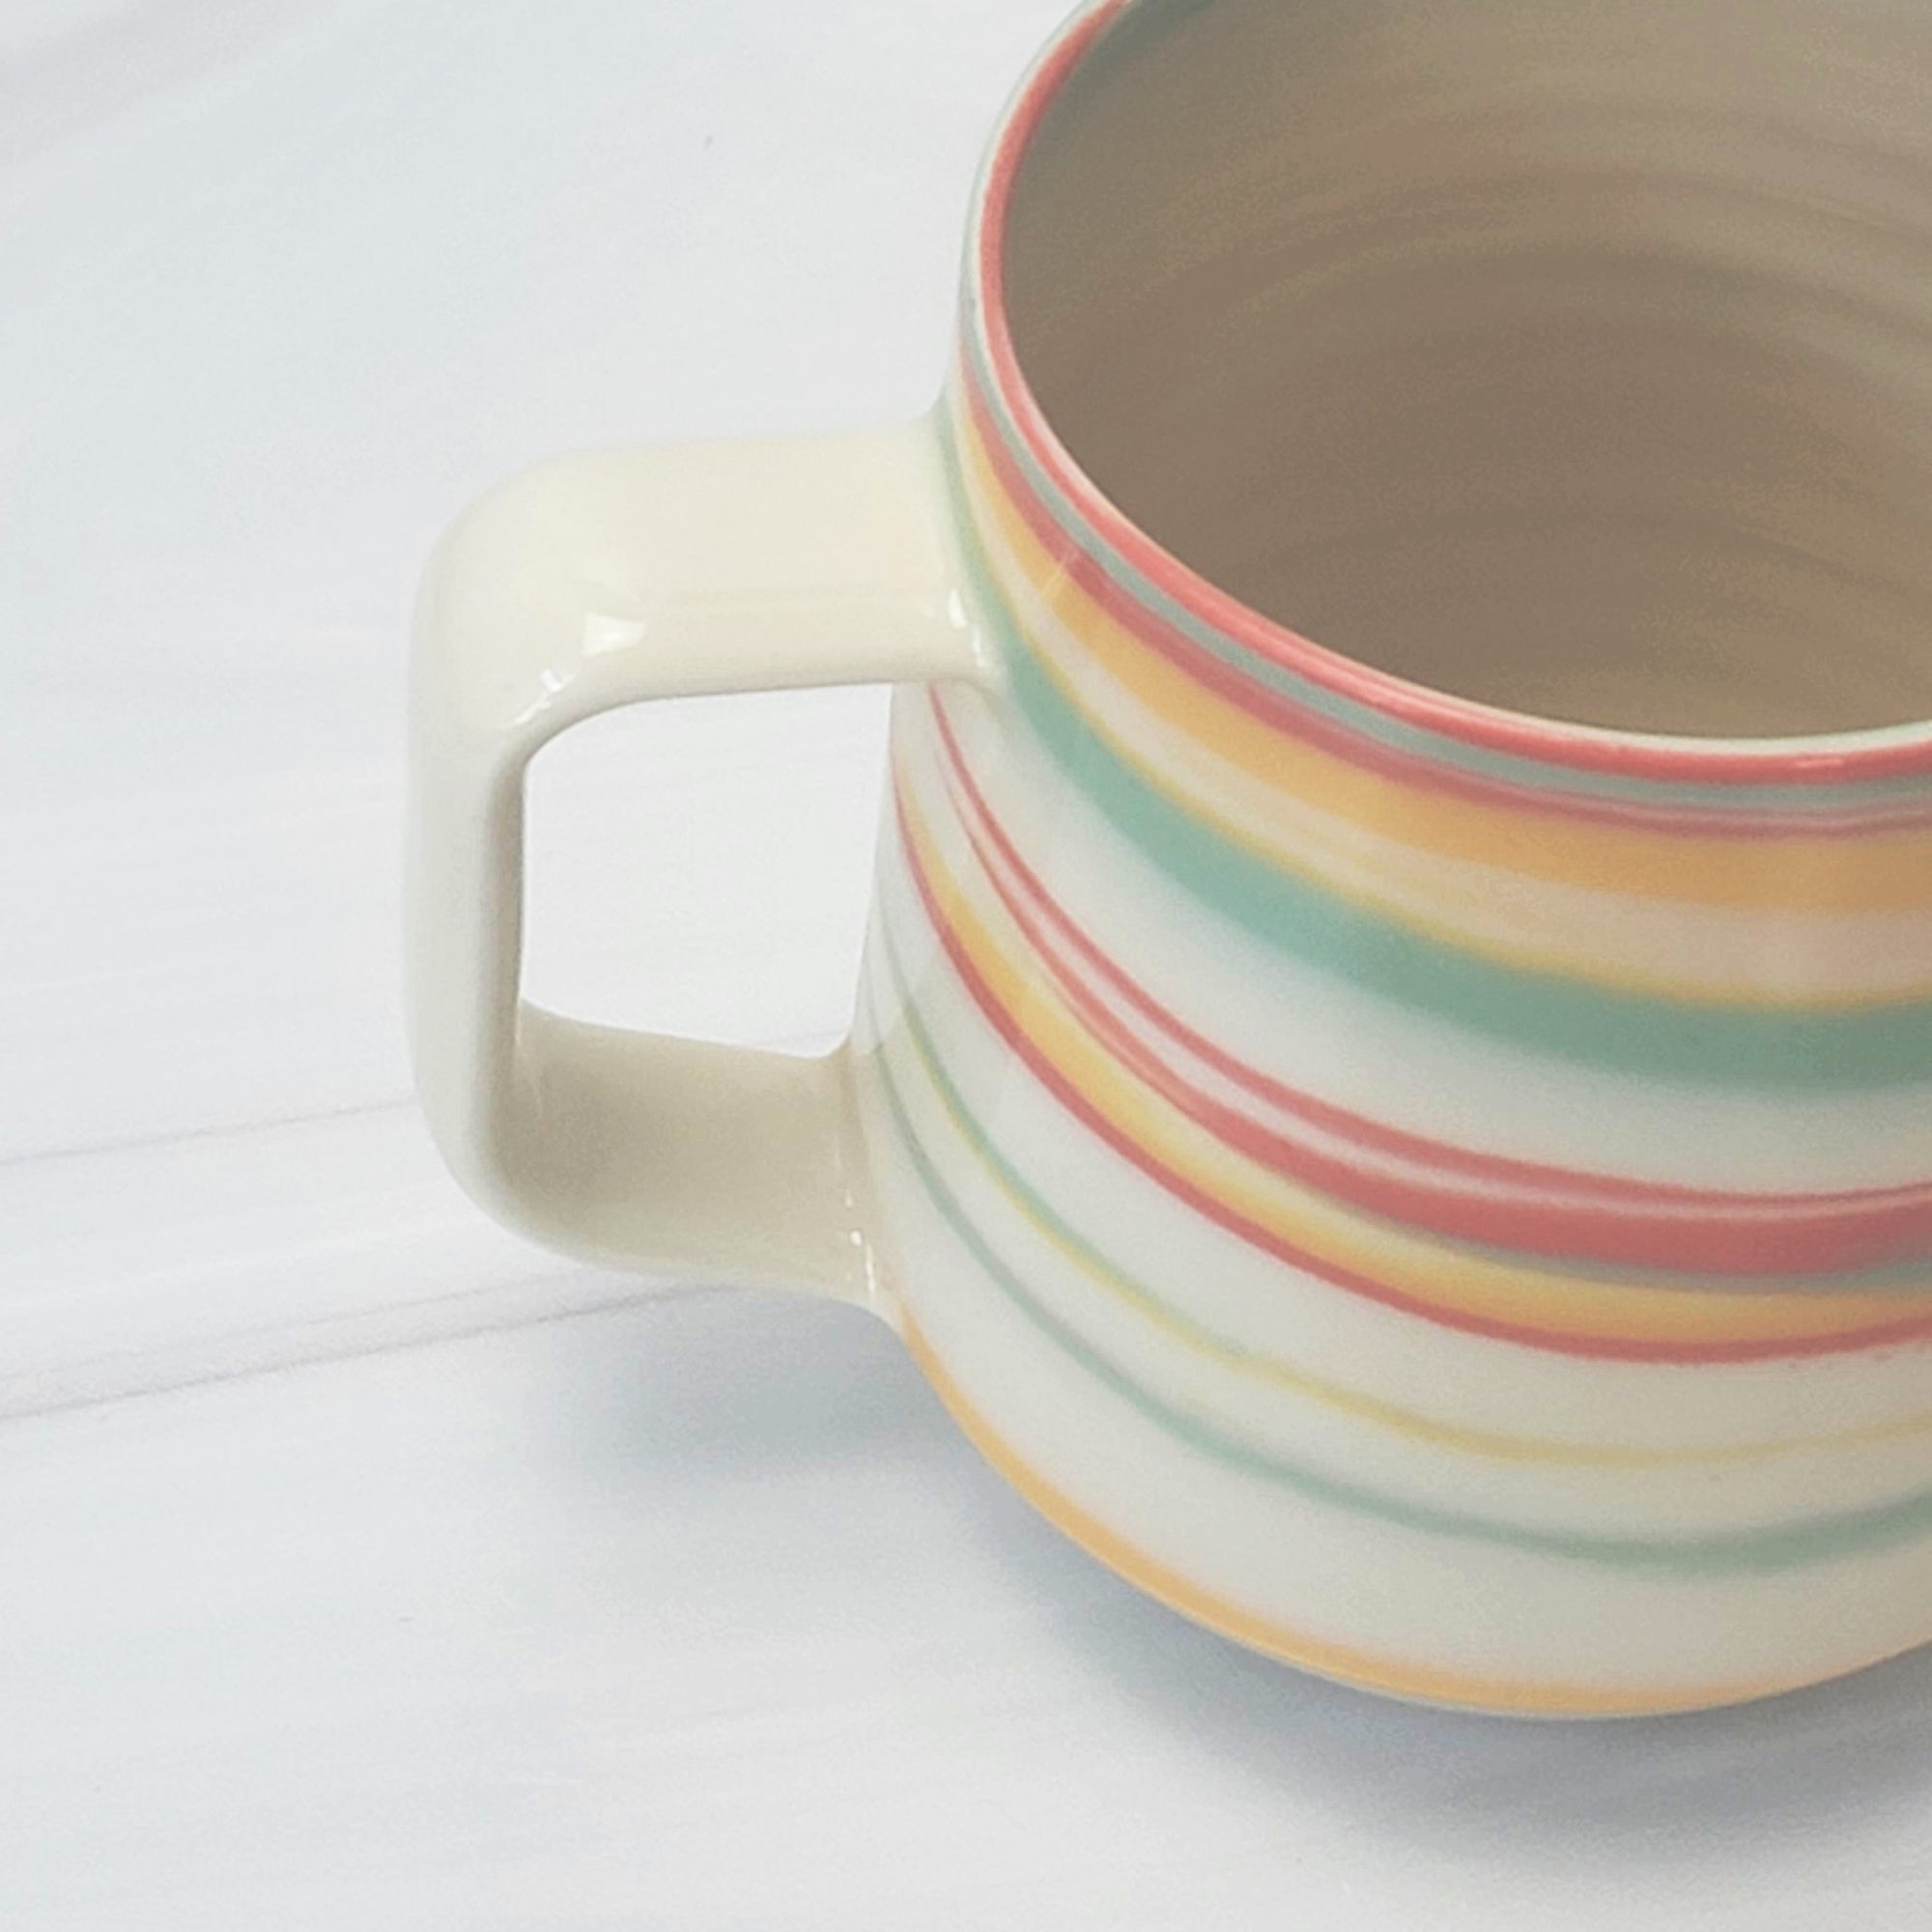 Taffy ceramic mug